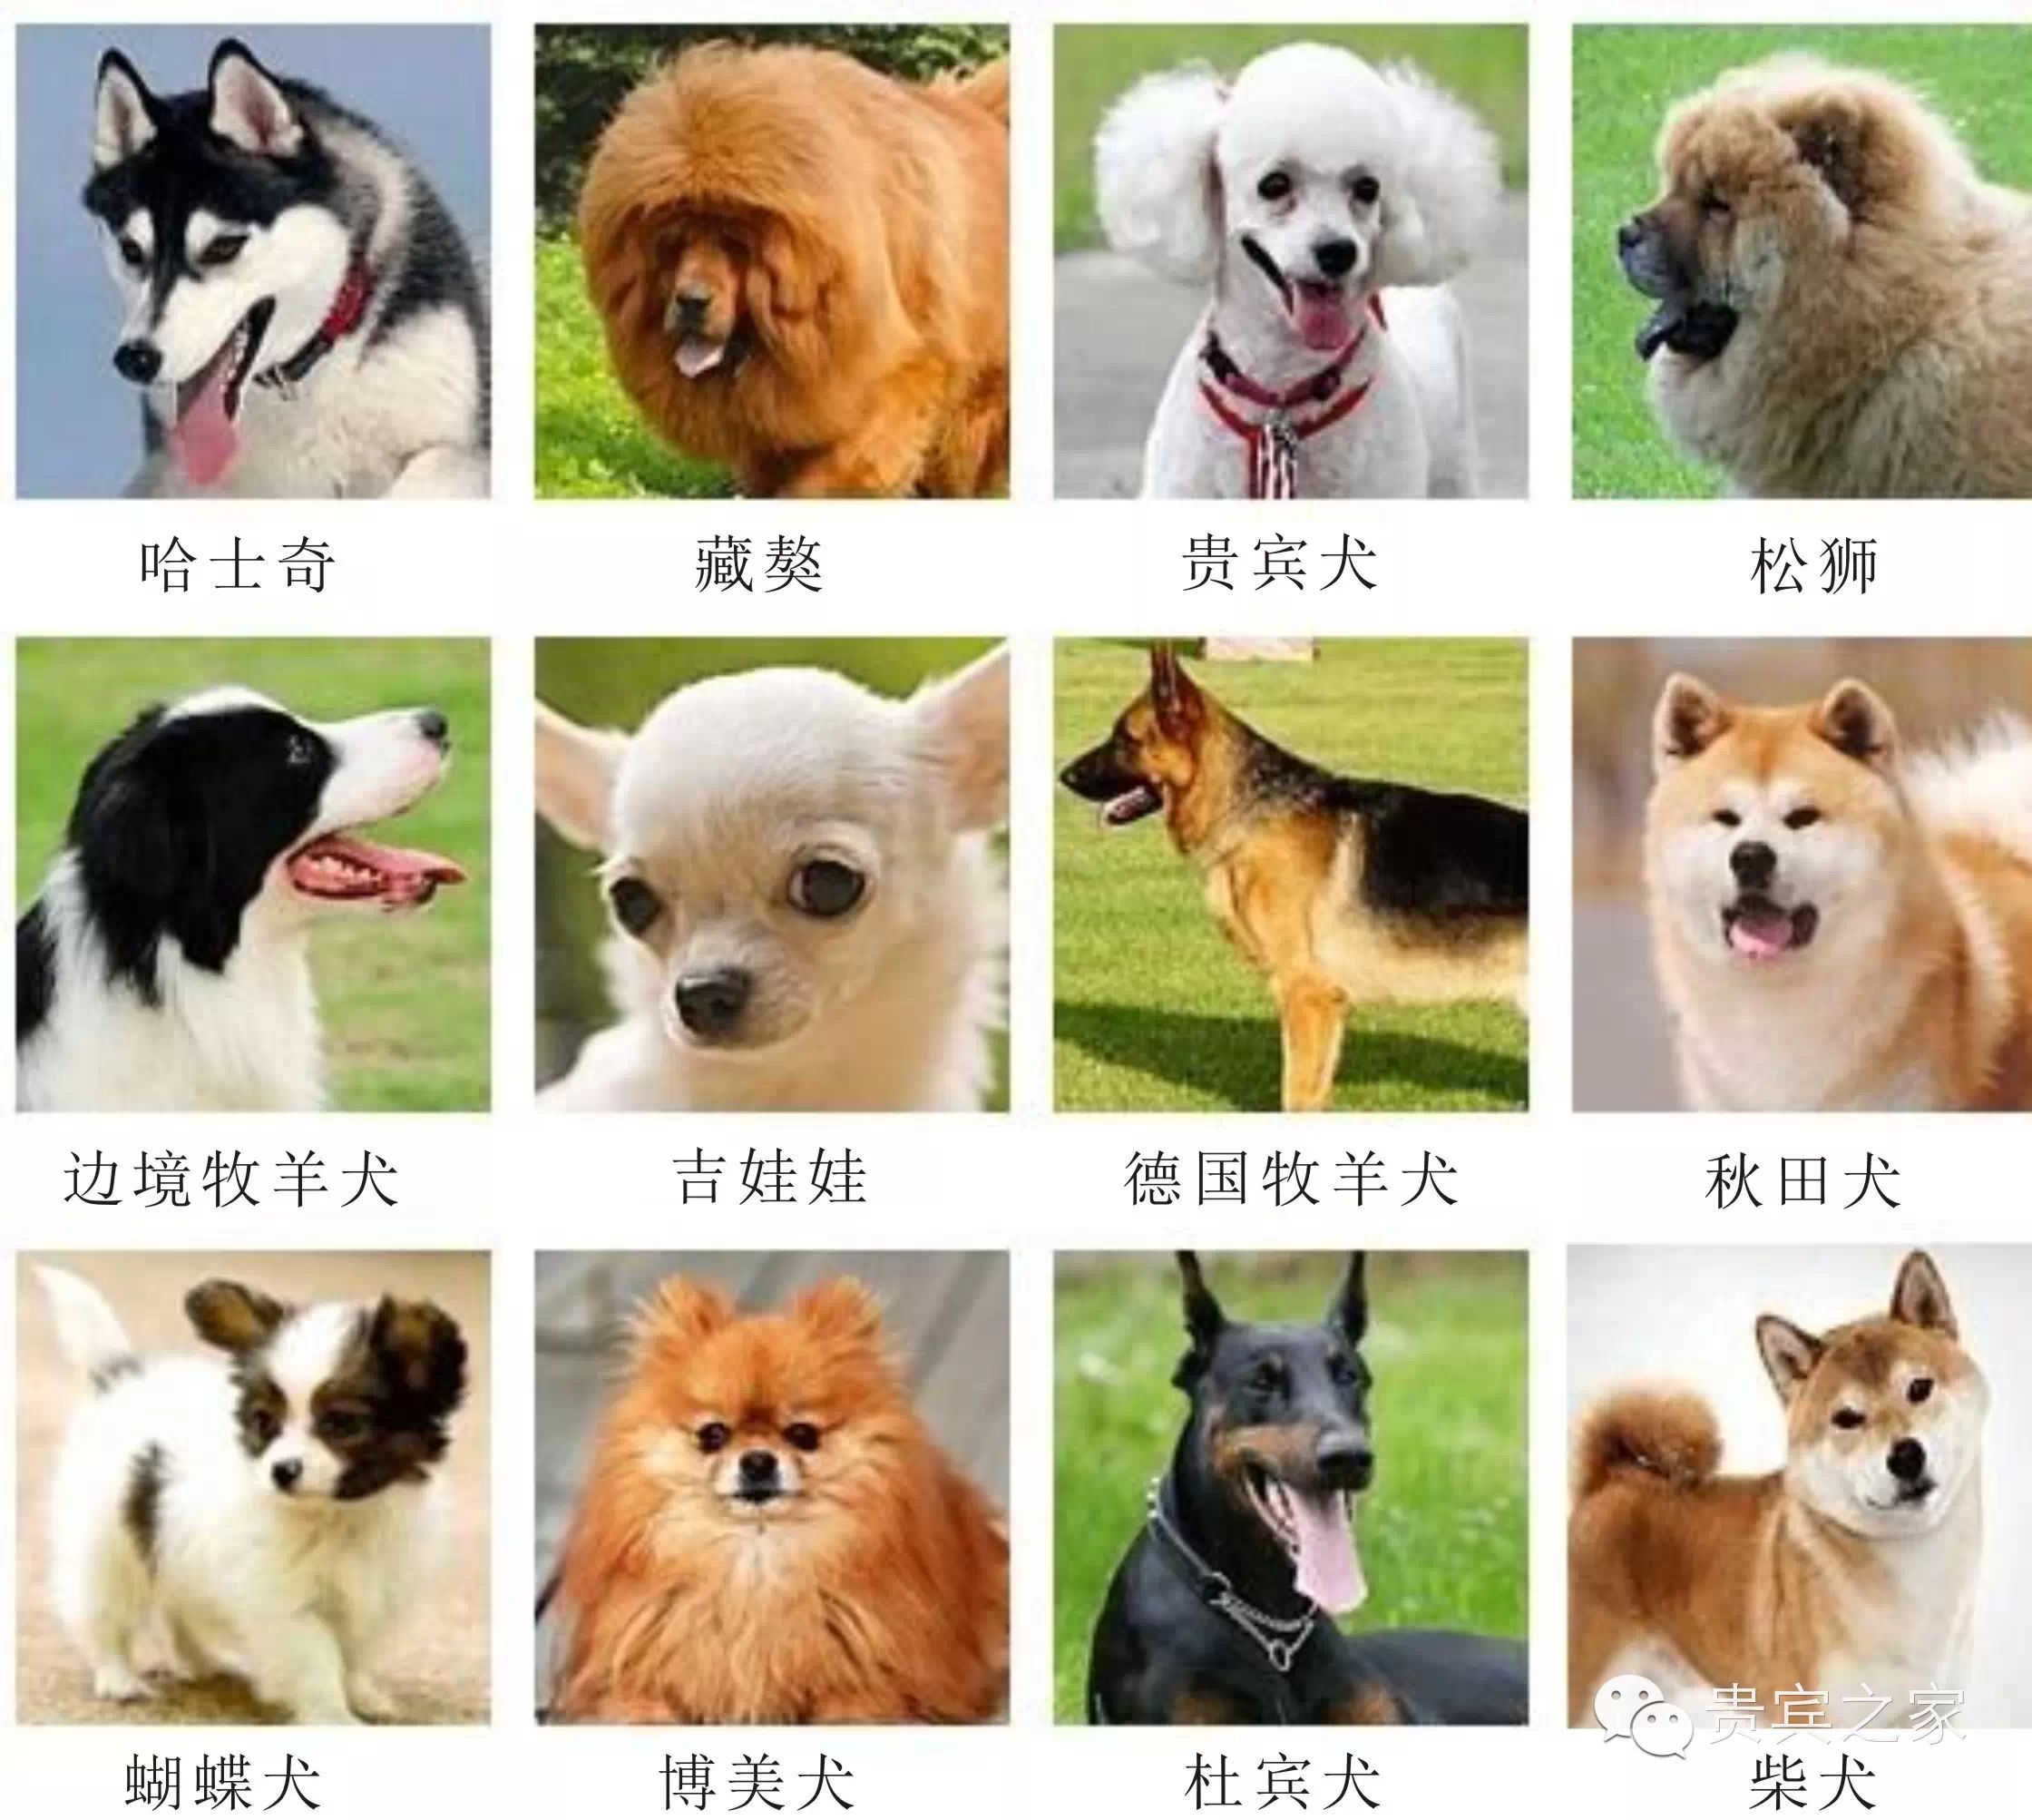 对生人最不友善的狗狗: 银狐,迷你杜宾,巨雪,吉娃娃,秋田犬,沙皮